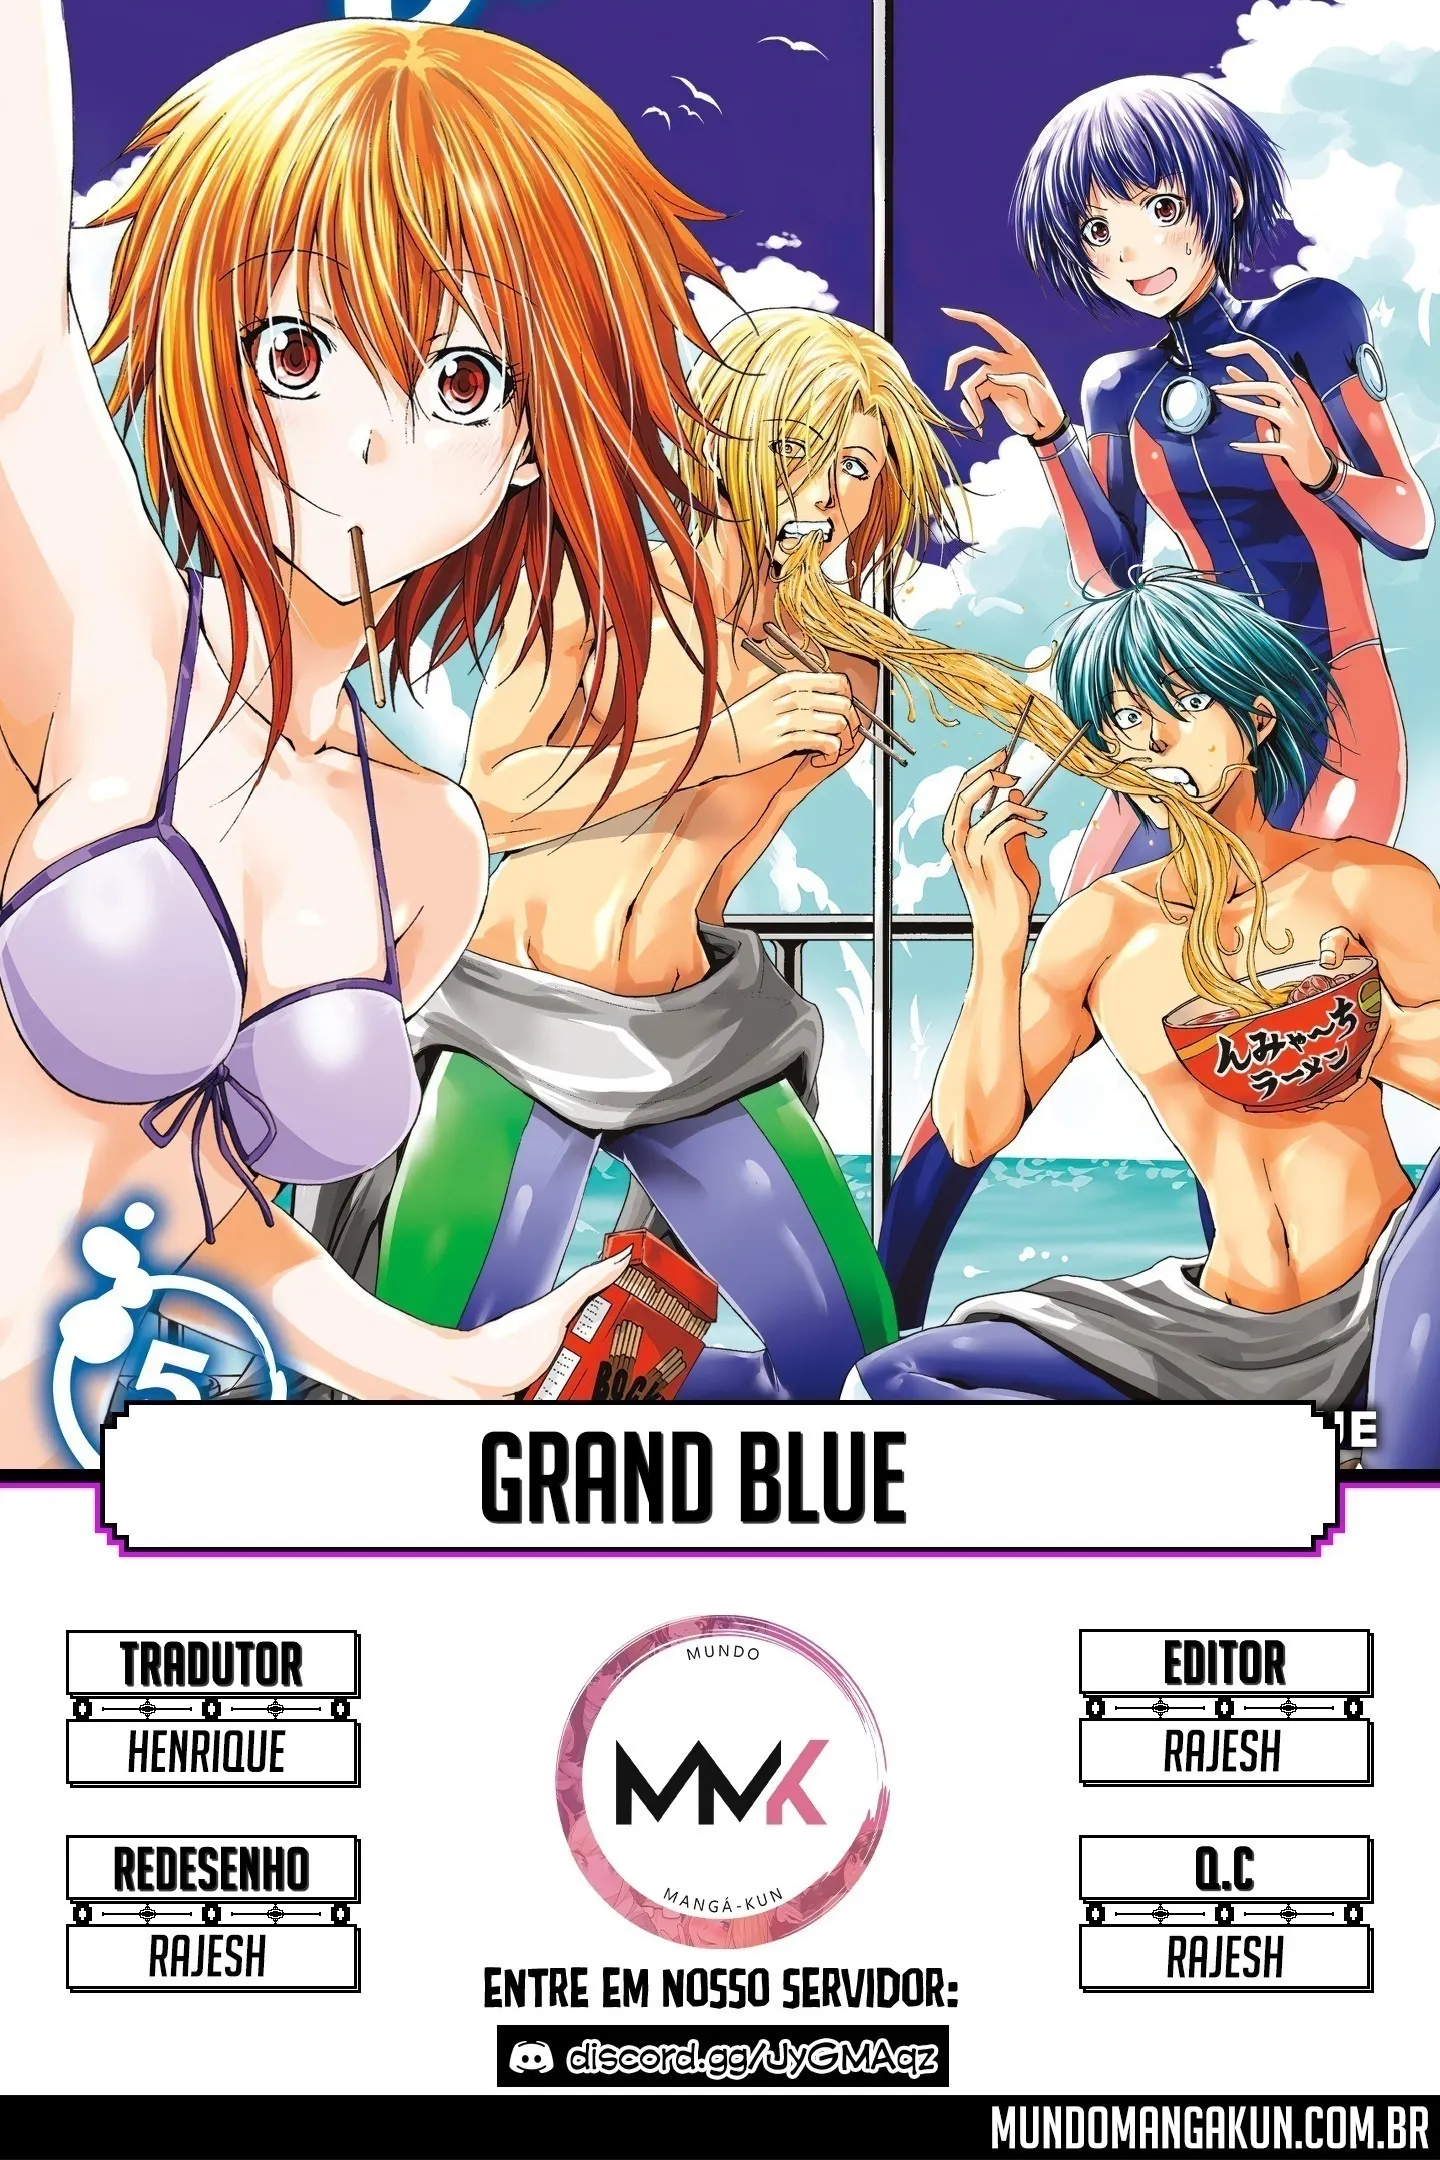 Grand Blue Dreaming Manga Volume 19